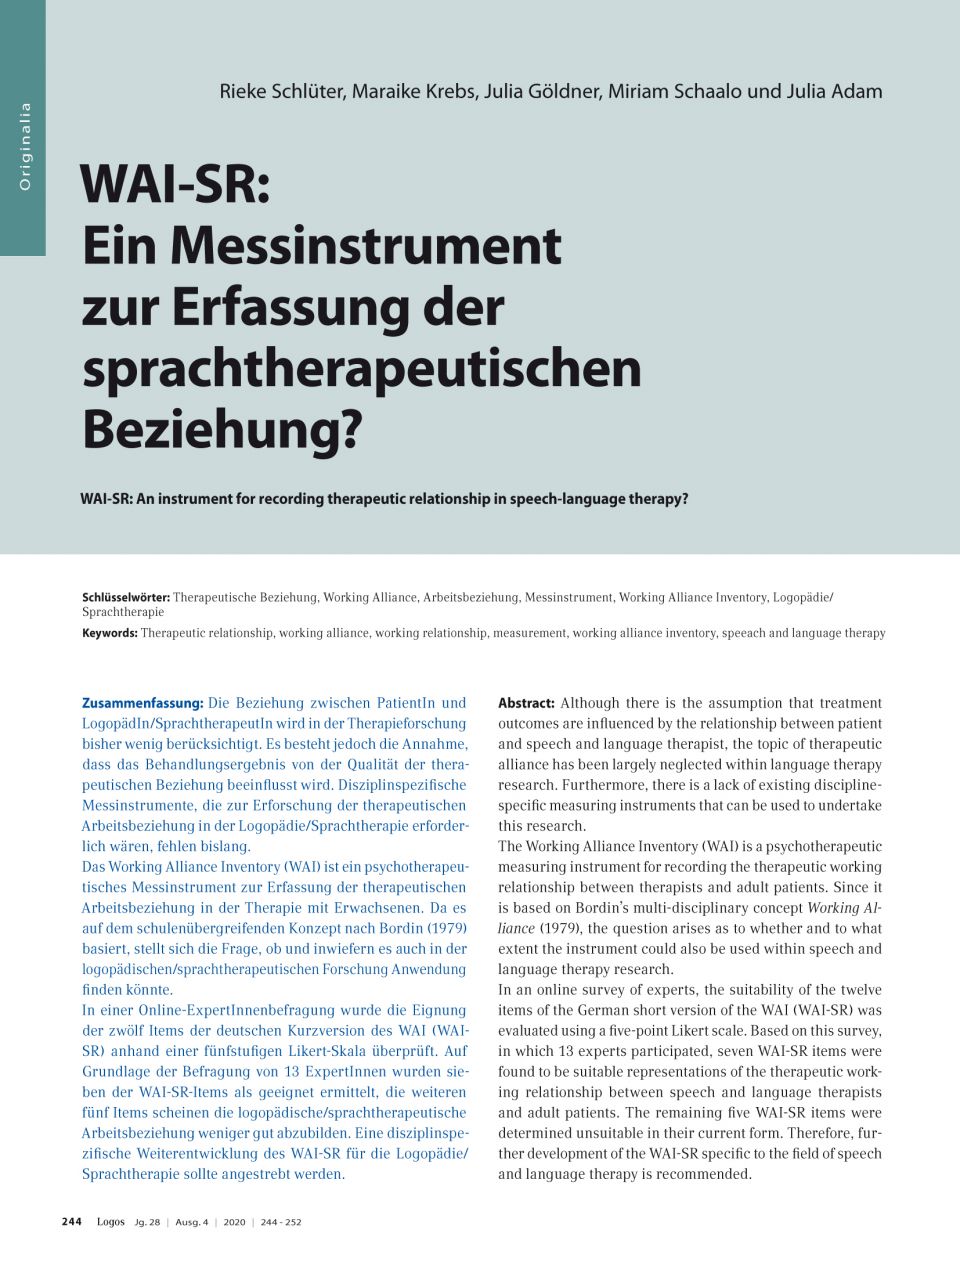 WAI-SR: Ein Messinstrument zur Erfassung der sprachtherapeutischen Beziehung?